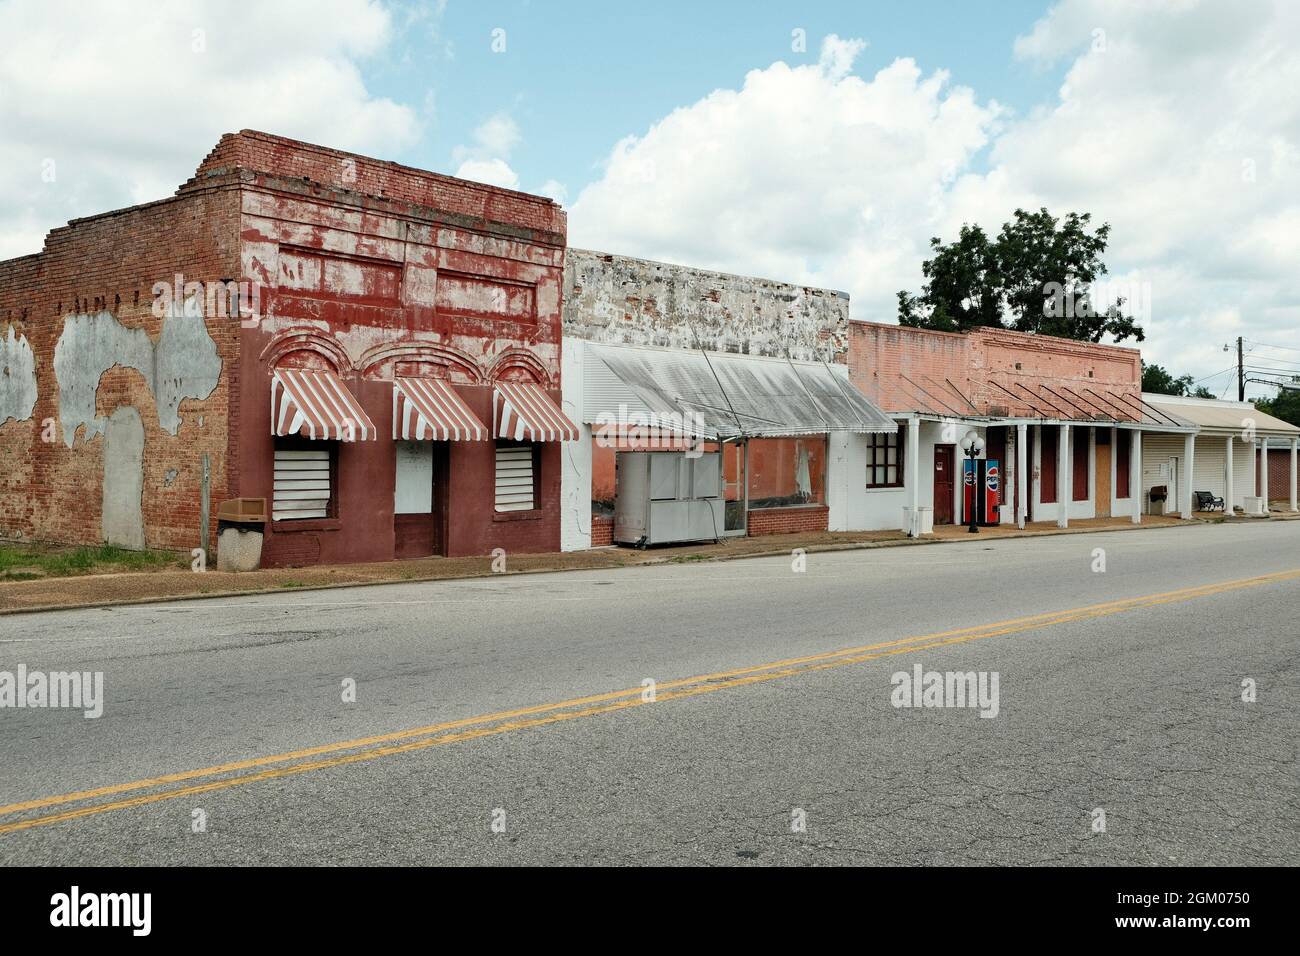 Le centre-ville est vide et les entreprises fermées dans une petite ville rurale de Clio Alabama, Etats-Unis. Banque D'Images